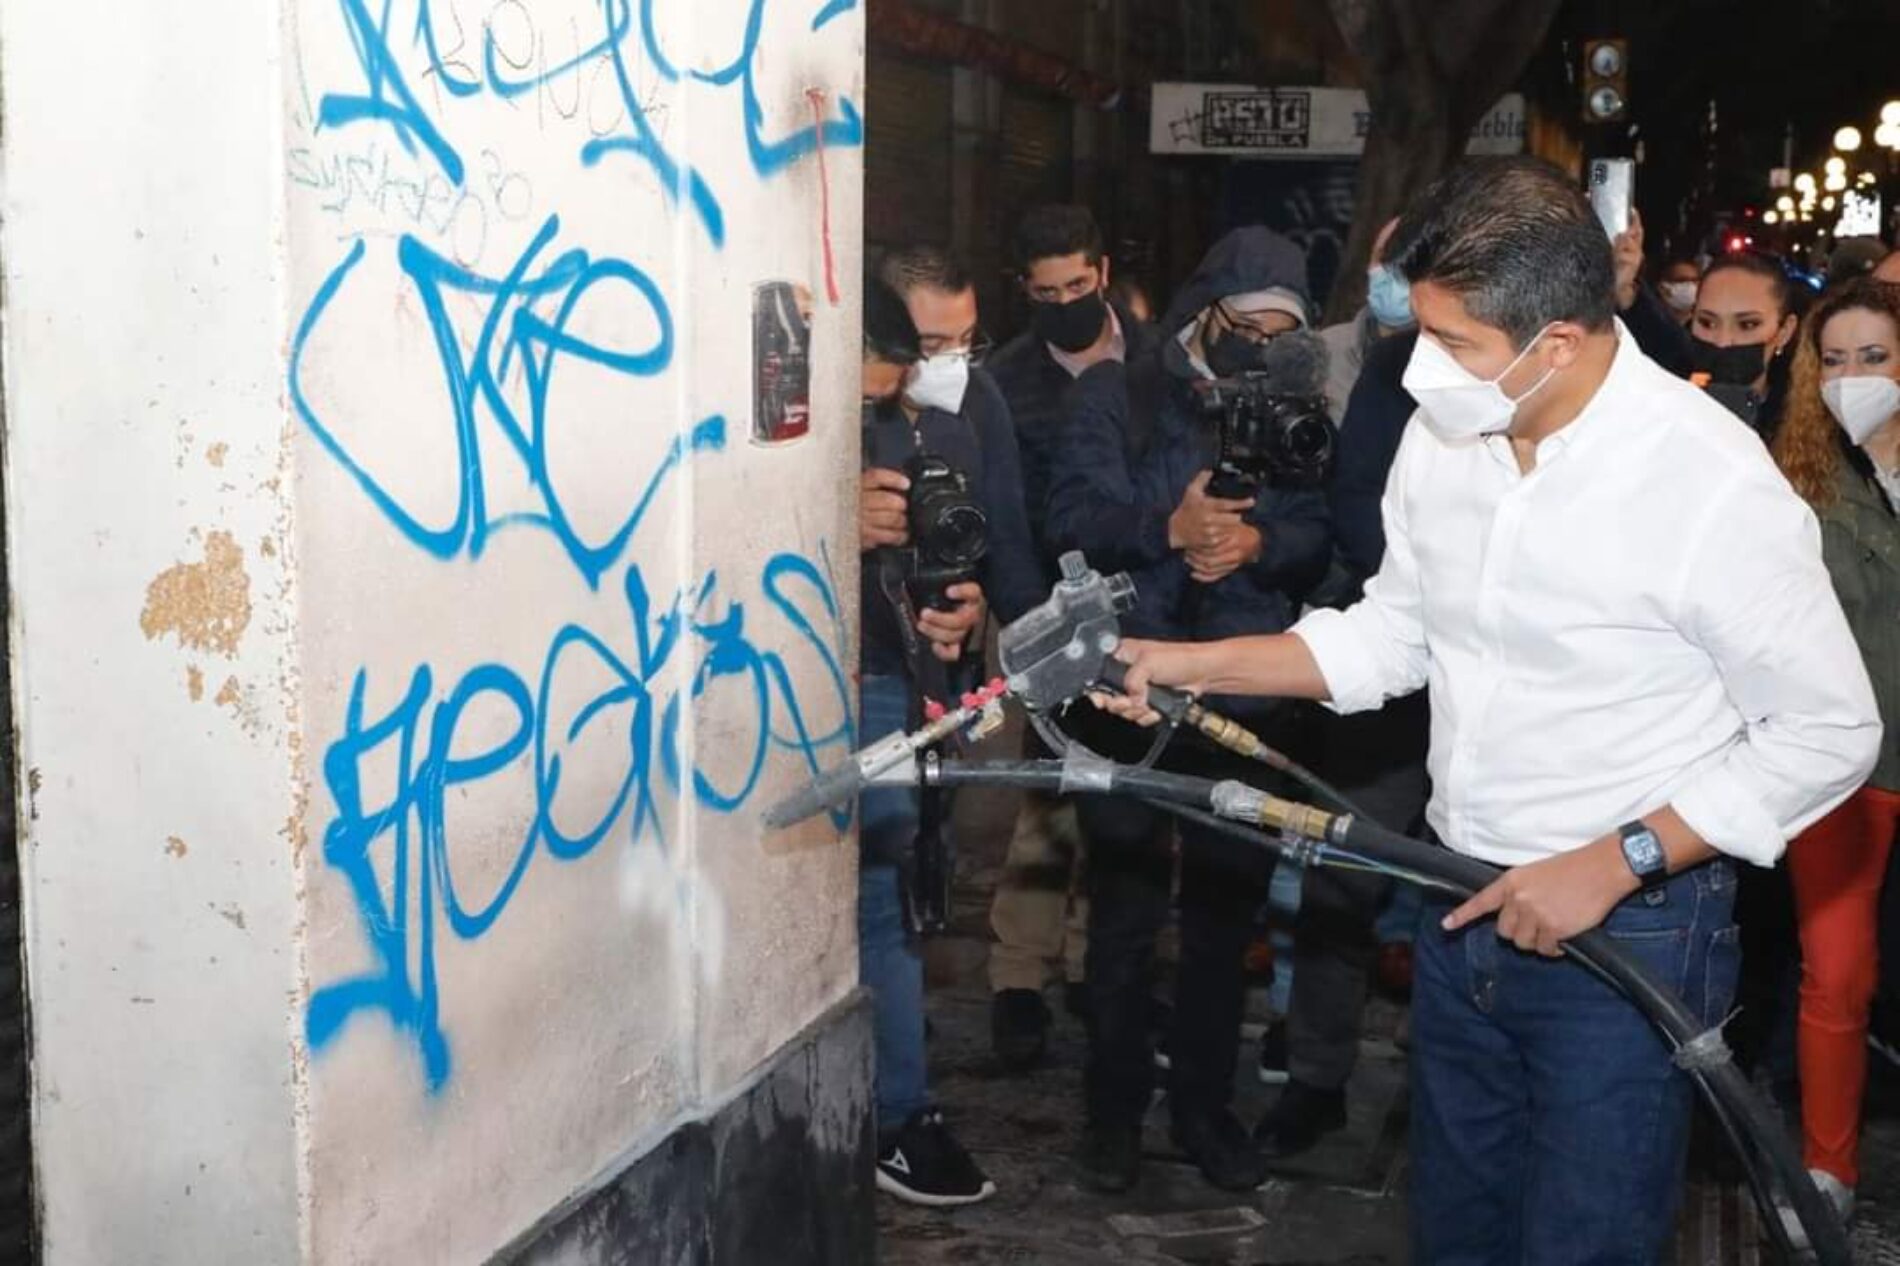 El alcalde de Puebla arrancó con los programas: “Limpieza del Centro Histórico y Eliminación de Grafiti”.